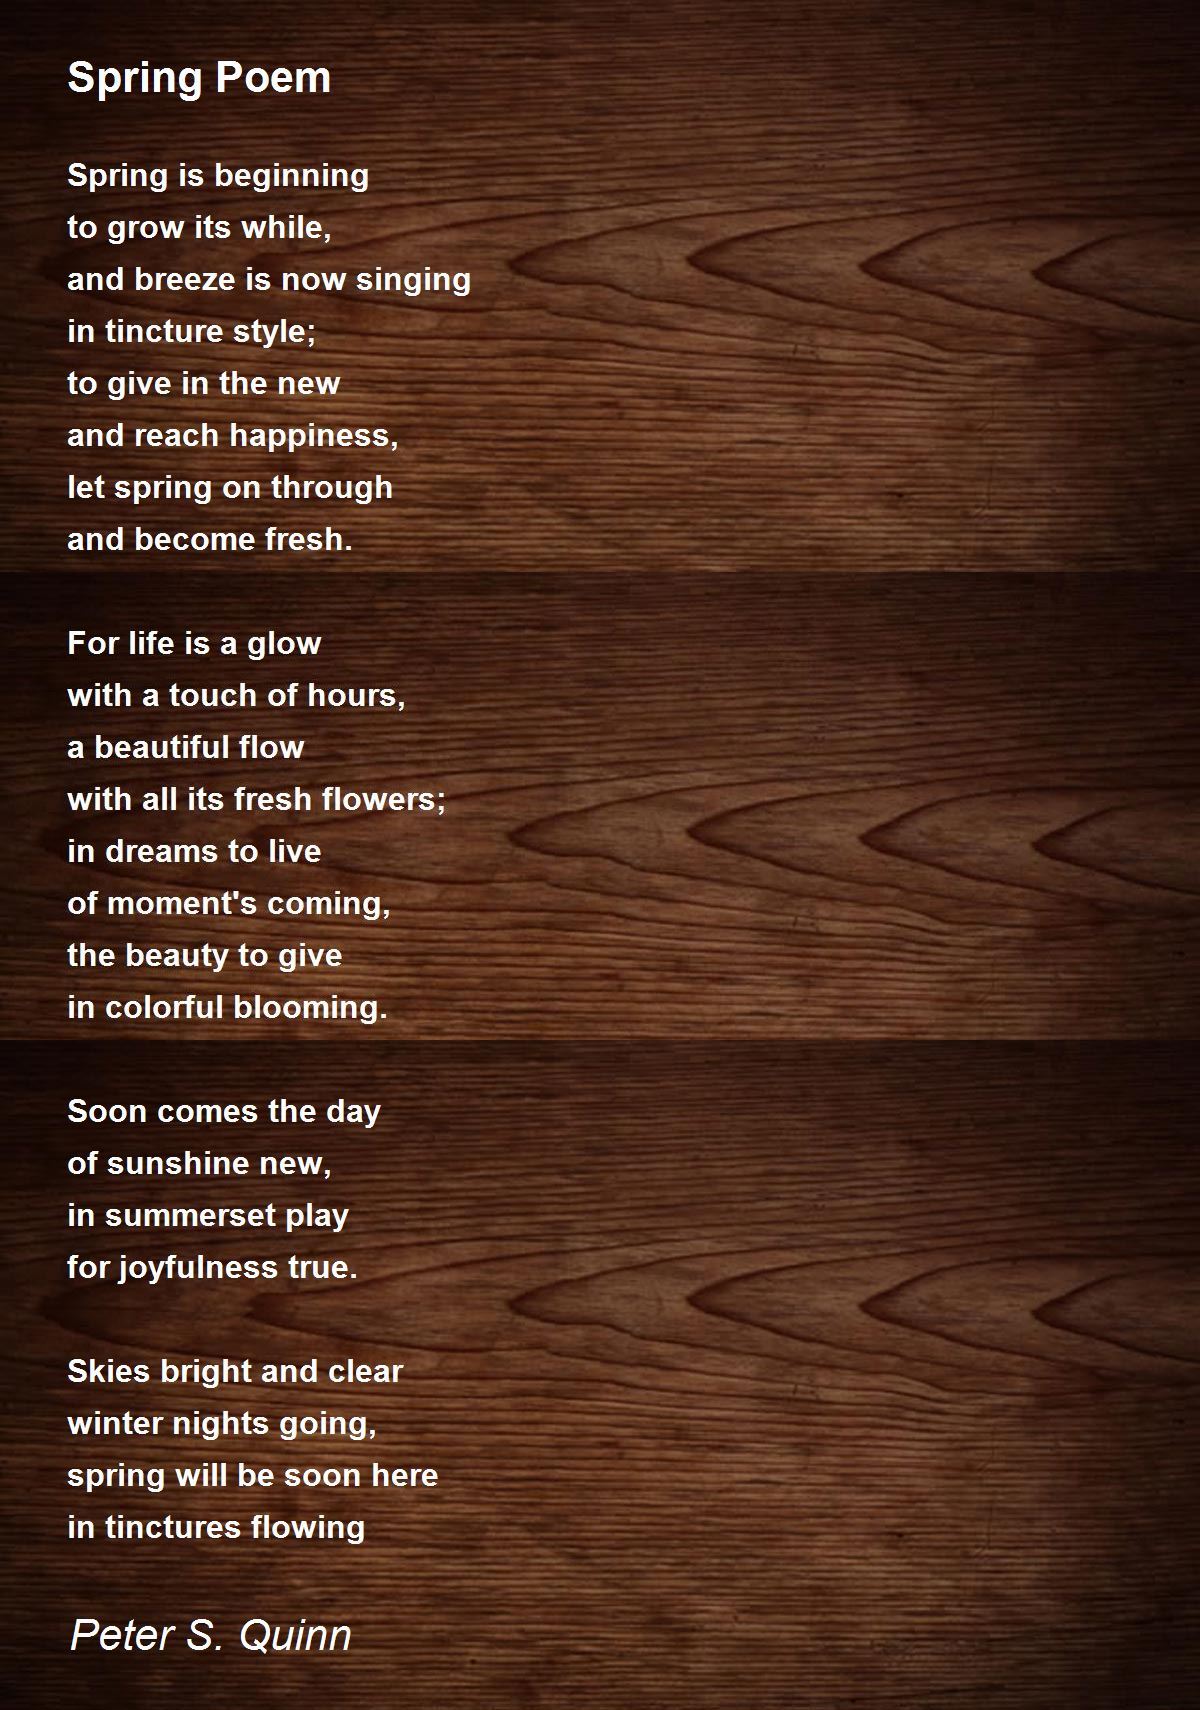 Spring Poem Poem by Peter S. Quinn - Poem Hunter